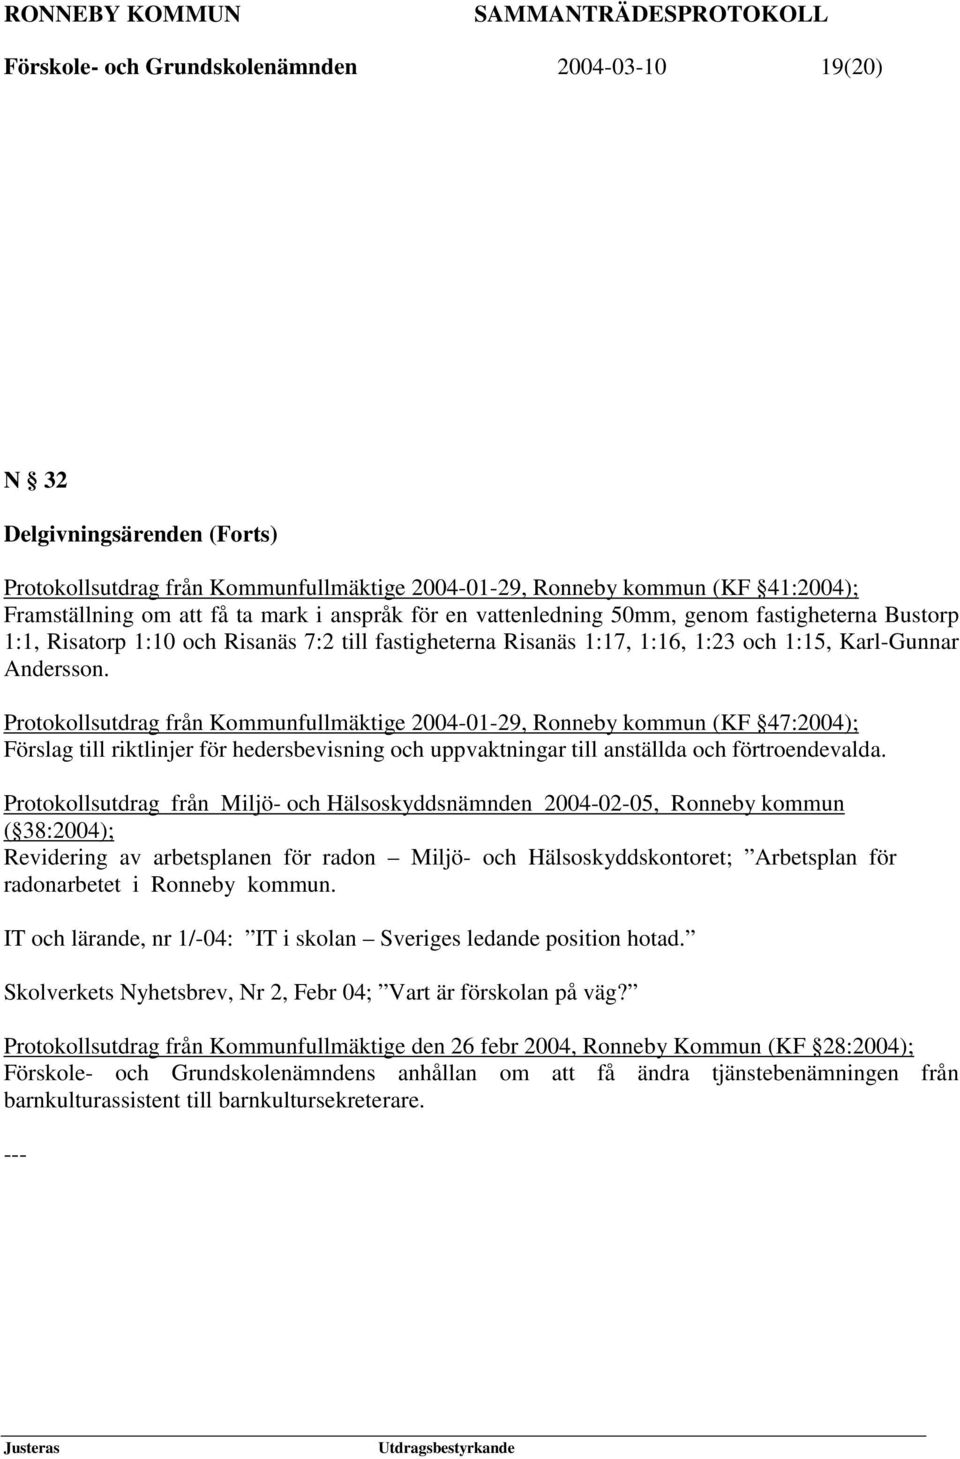 Protokollsutdrag från Kommunfullmäktige 2004-01-29, Ronneby kommun (KF 47:2004); Förslag till riktlinjer för hedersbevisning och uppvaktningar till anställda och förtroendevalda.